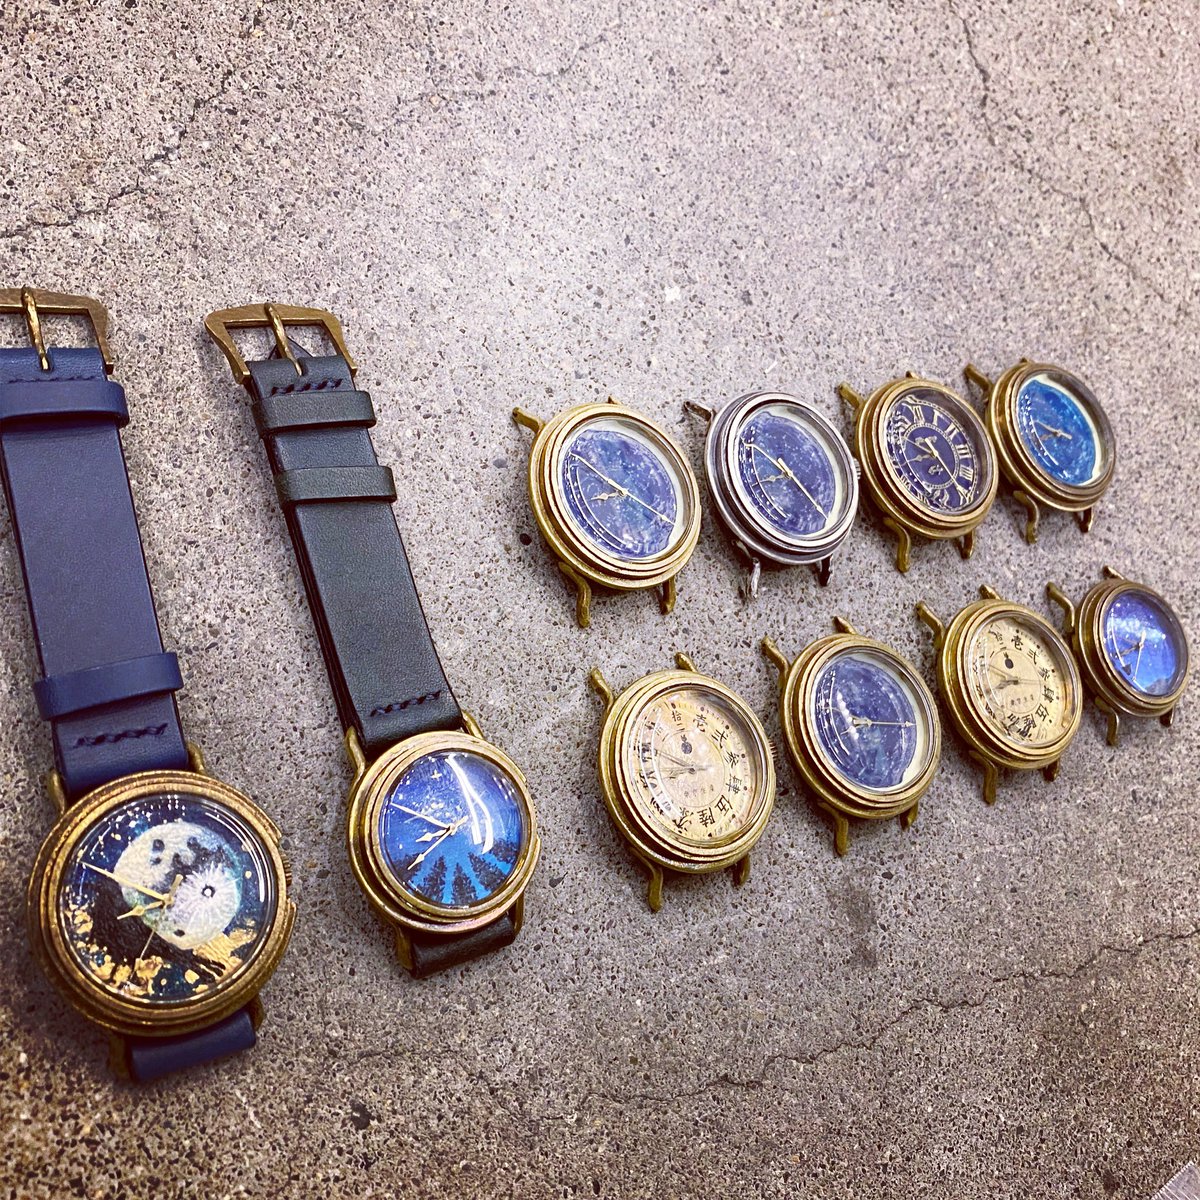 ヤナイコウヘイ 手作り腕時計 手作り時計 スチームパンク腕時計 頑張った 動作チェックに入りますすす 手作り時計 手作り腕時計 ハンドメイド時計 ハンドメイド腕時計 ハンドメイドウォッチ 新宿でモノづくり 東京でモノづくり